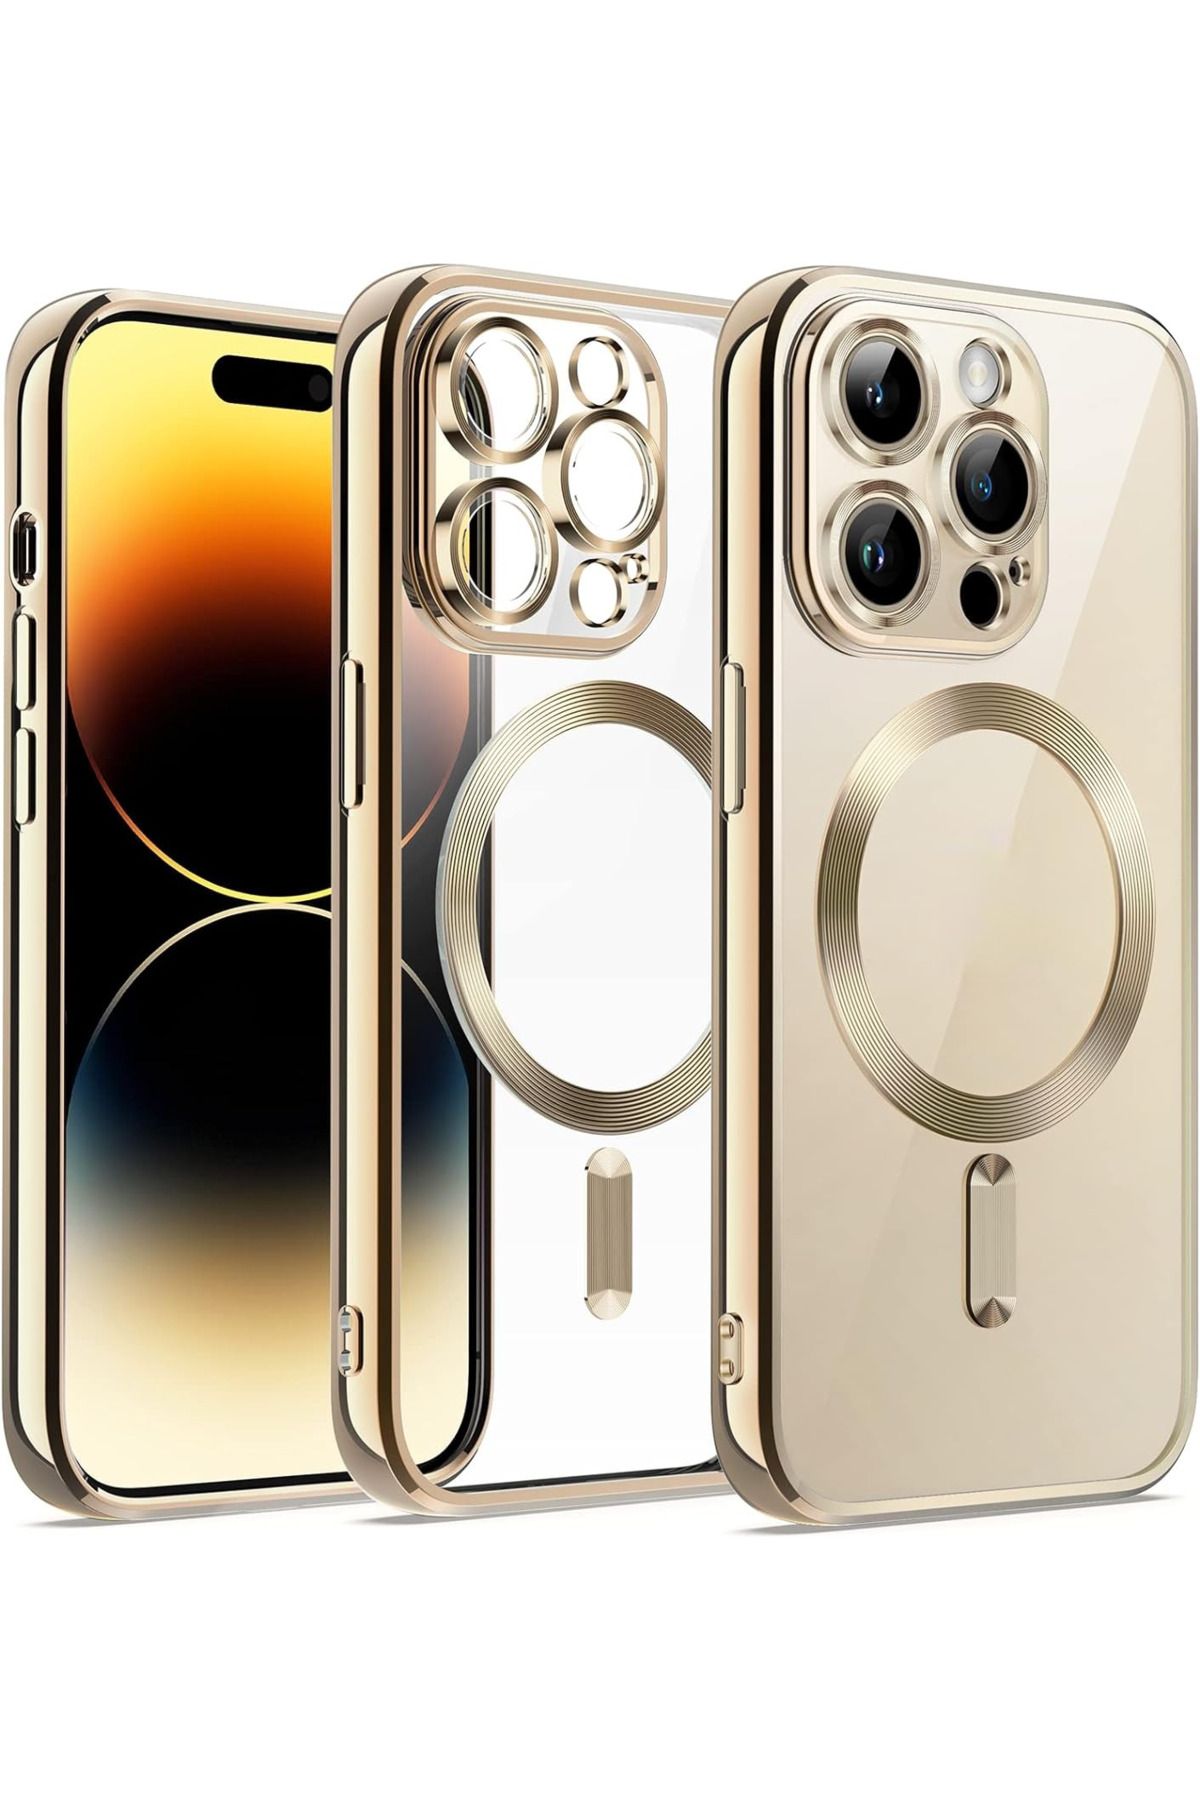 Fibaks Apple Iphone 11 Pro Max Kılıf Kamera Lens Korumalı Magsafe Şarj Kilifi Şeffaf Renkli Yumuşak Kapak